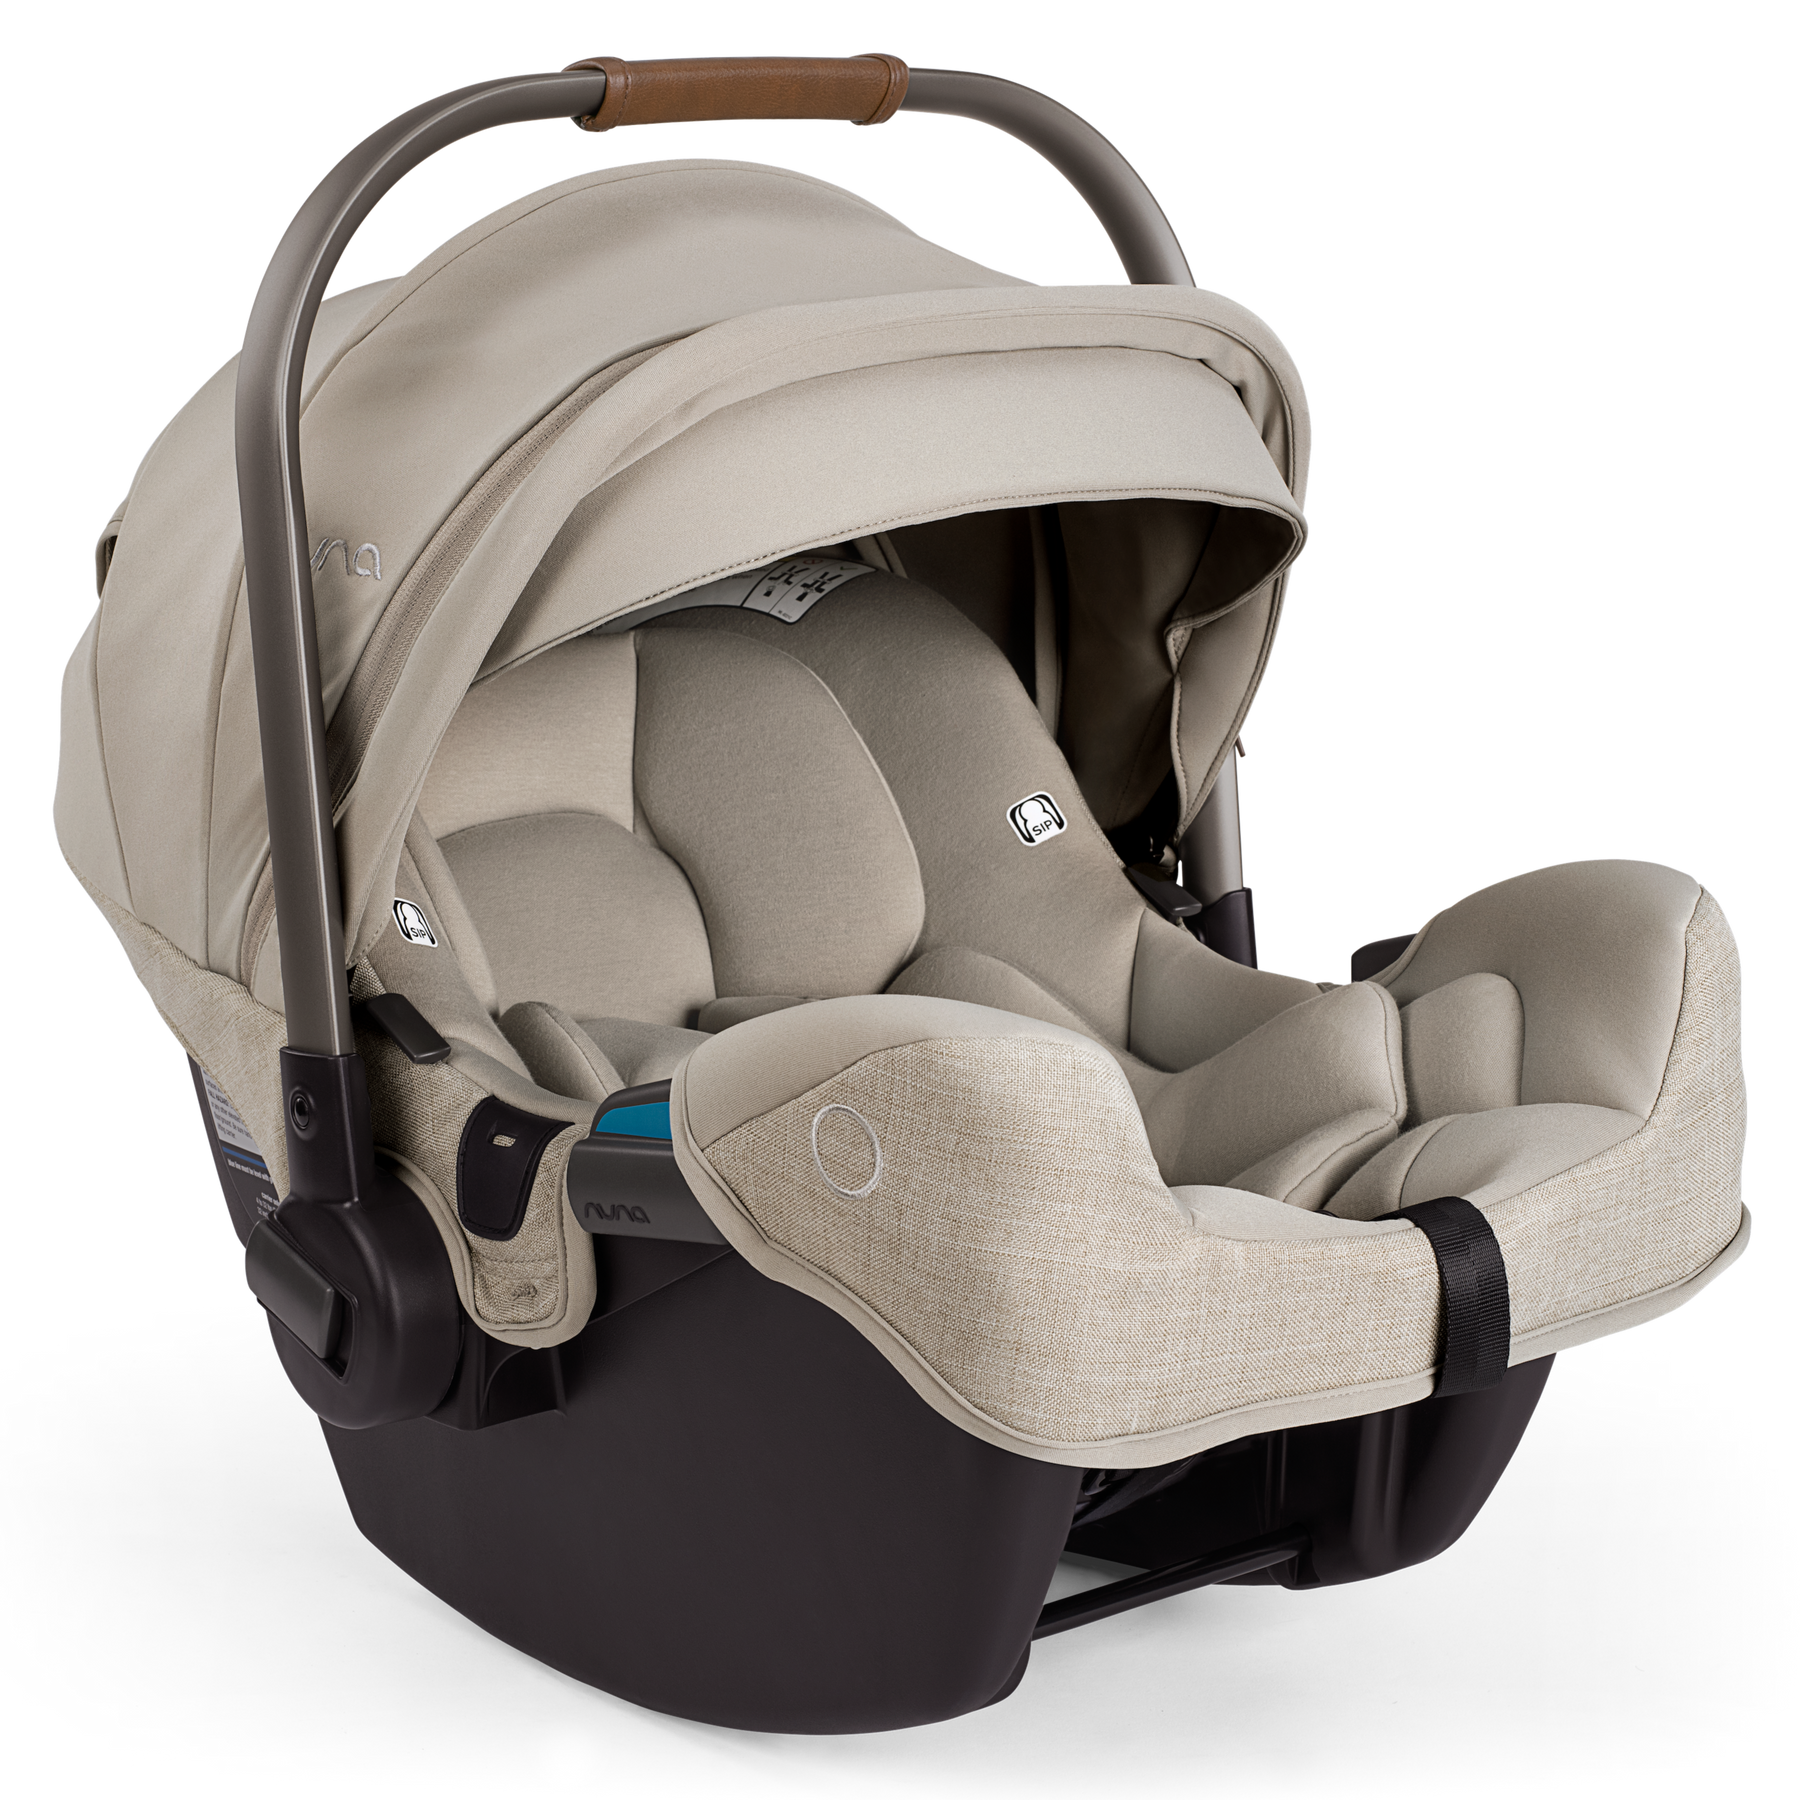 Nuna Nuna Pipa RX infant car seat with RELX base